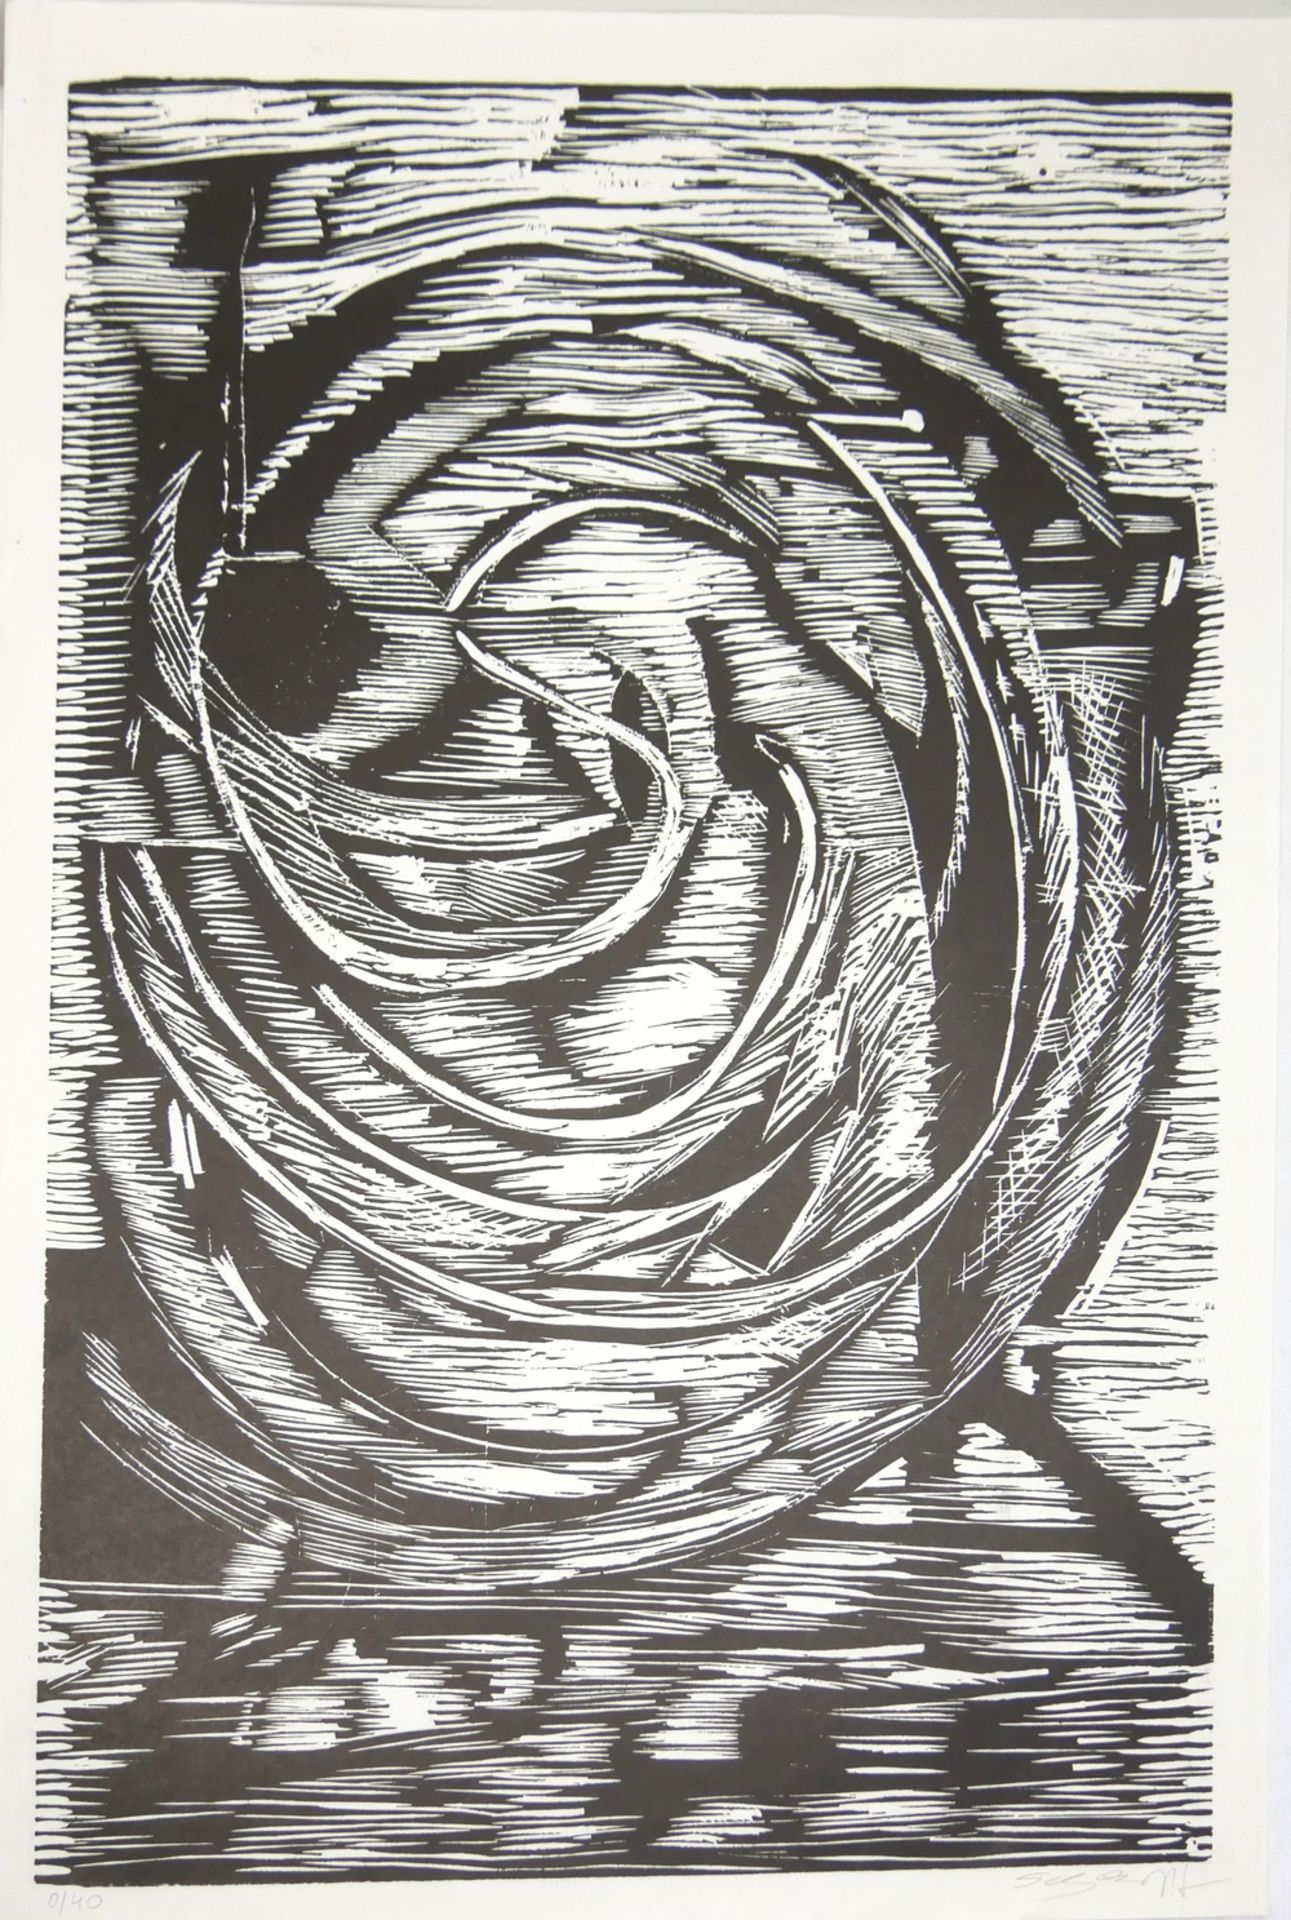 Grafik wohl Ryszard STRYJEC (1932-1997)? "Komposition" handsigniert. Blatt 0/40. Blattmaße: Höhe ca.